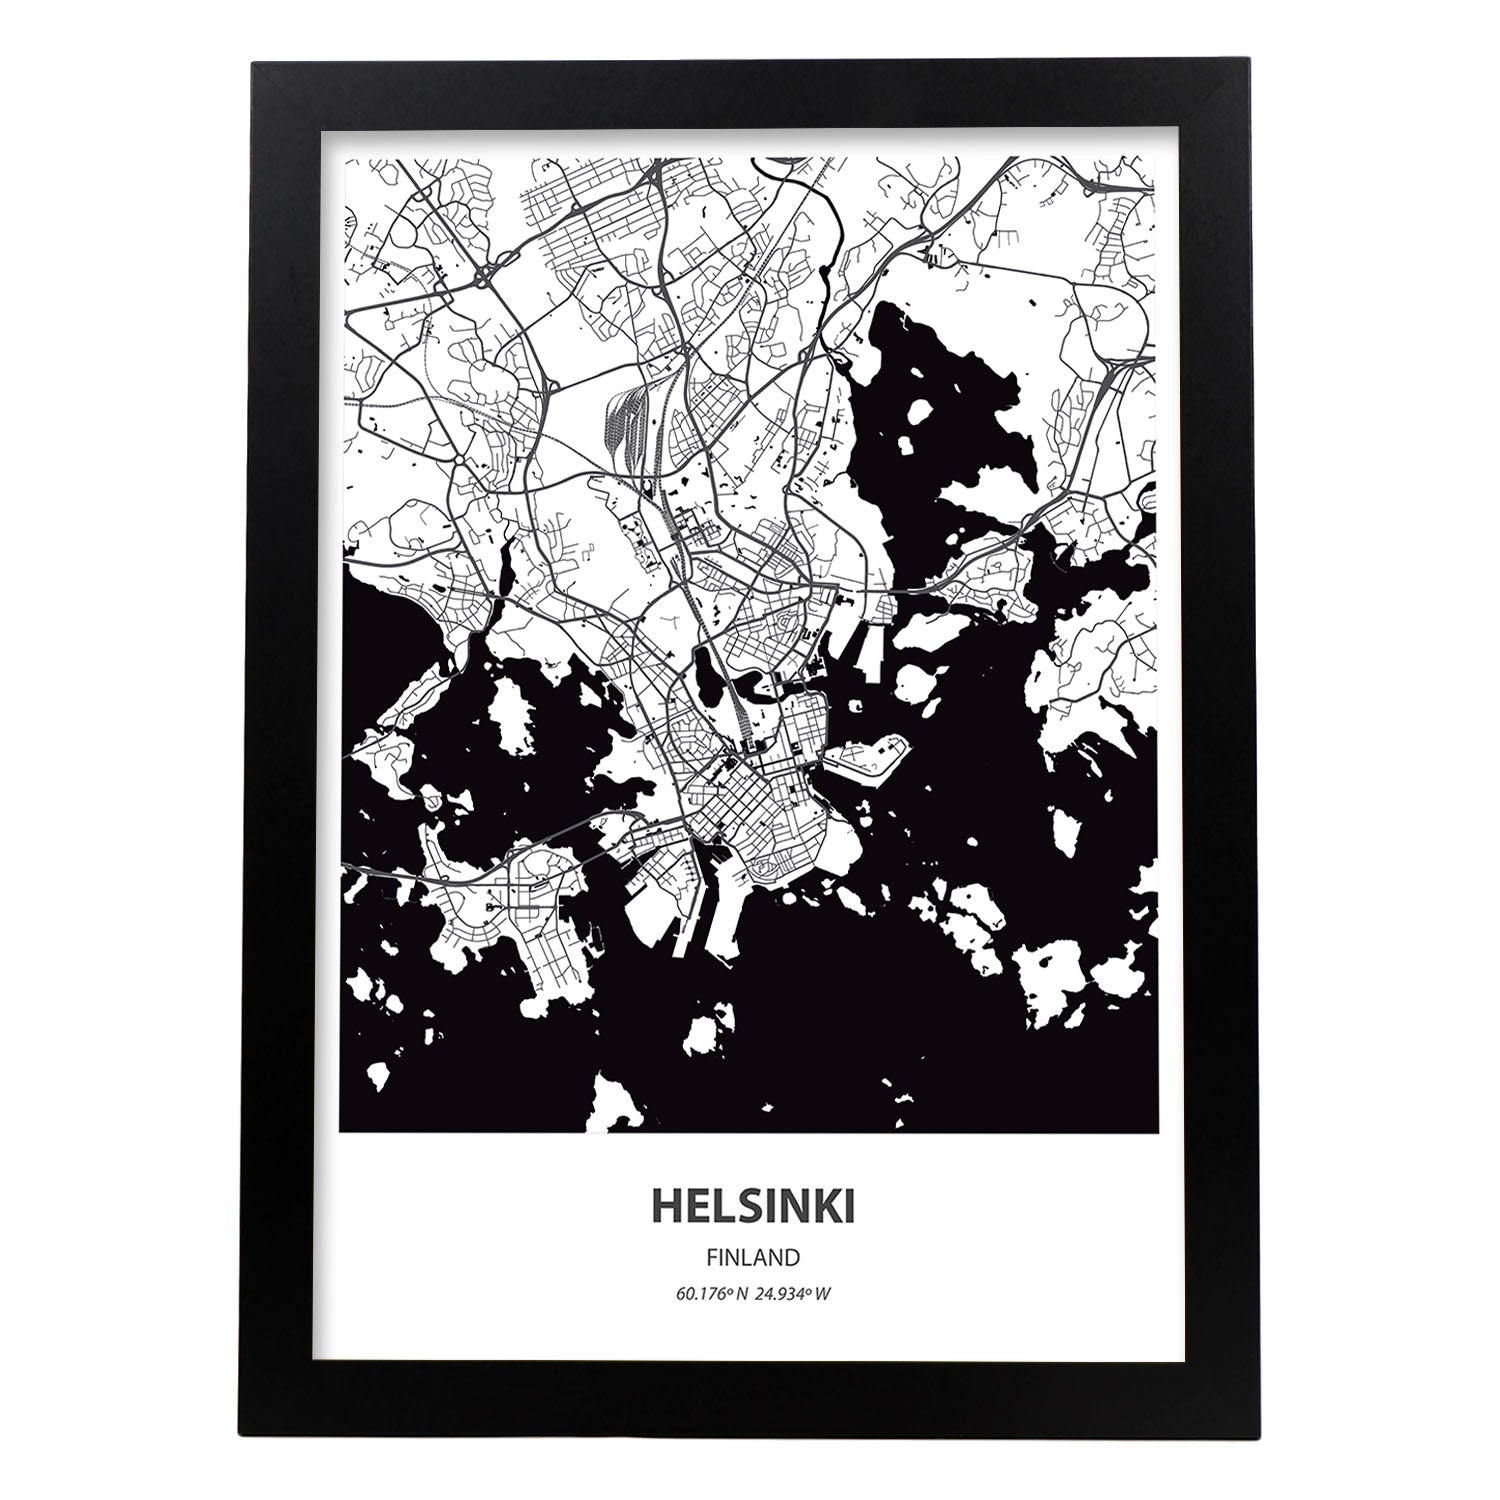 Poster con mapa de Helsinki - Finlandia. Láminas de ciudades del norte de Europa con mares y ríos en color negro.-Artwork-Nacnic-A3-Marco Negro-Nacnic Estudio SL